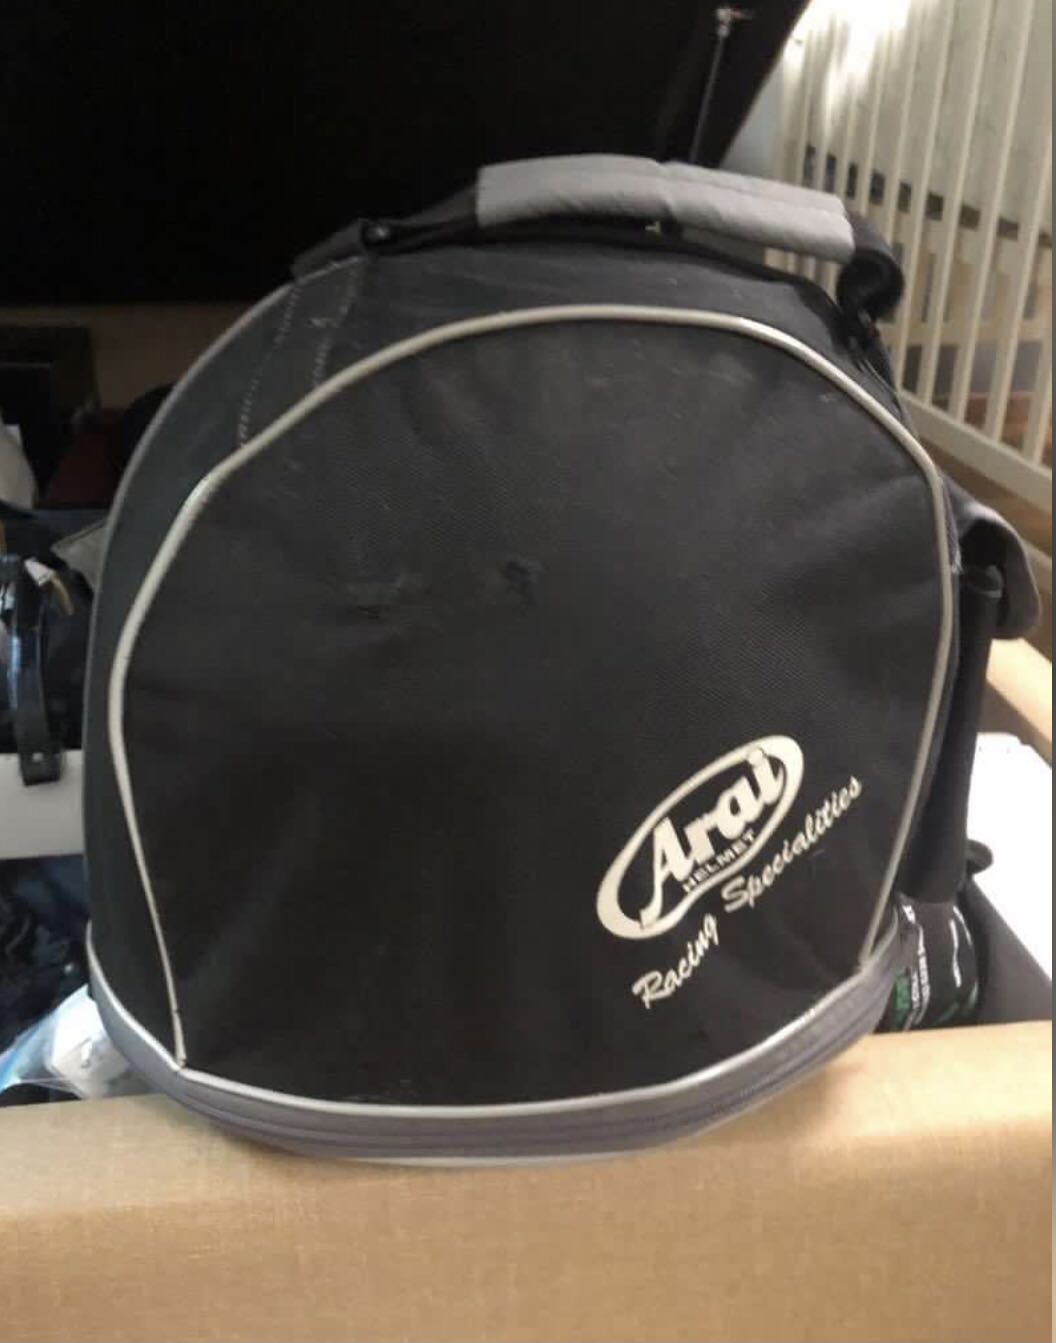 Arai helmet bag, Motorcycles, Motorcycle Accessories on Carousell